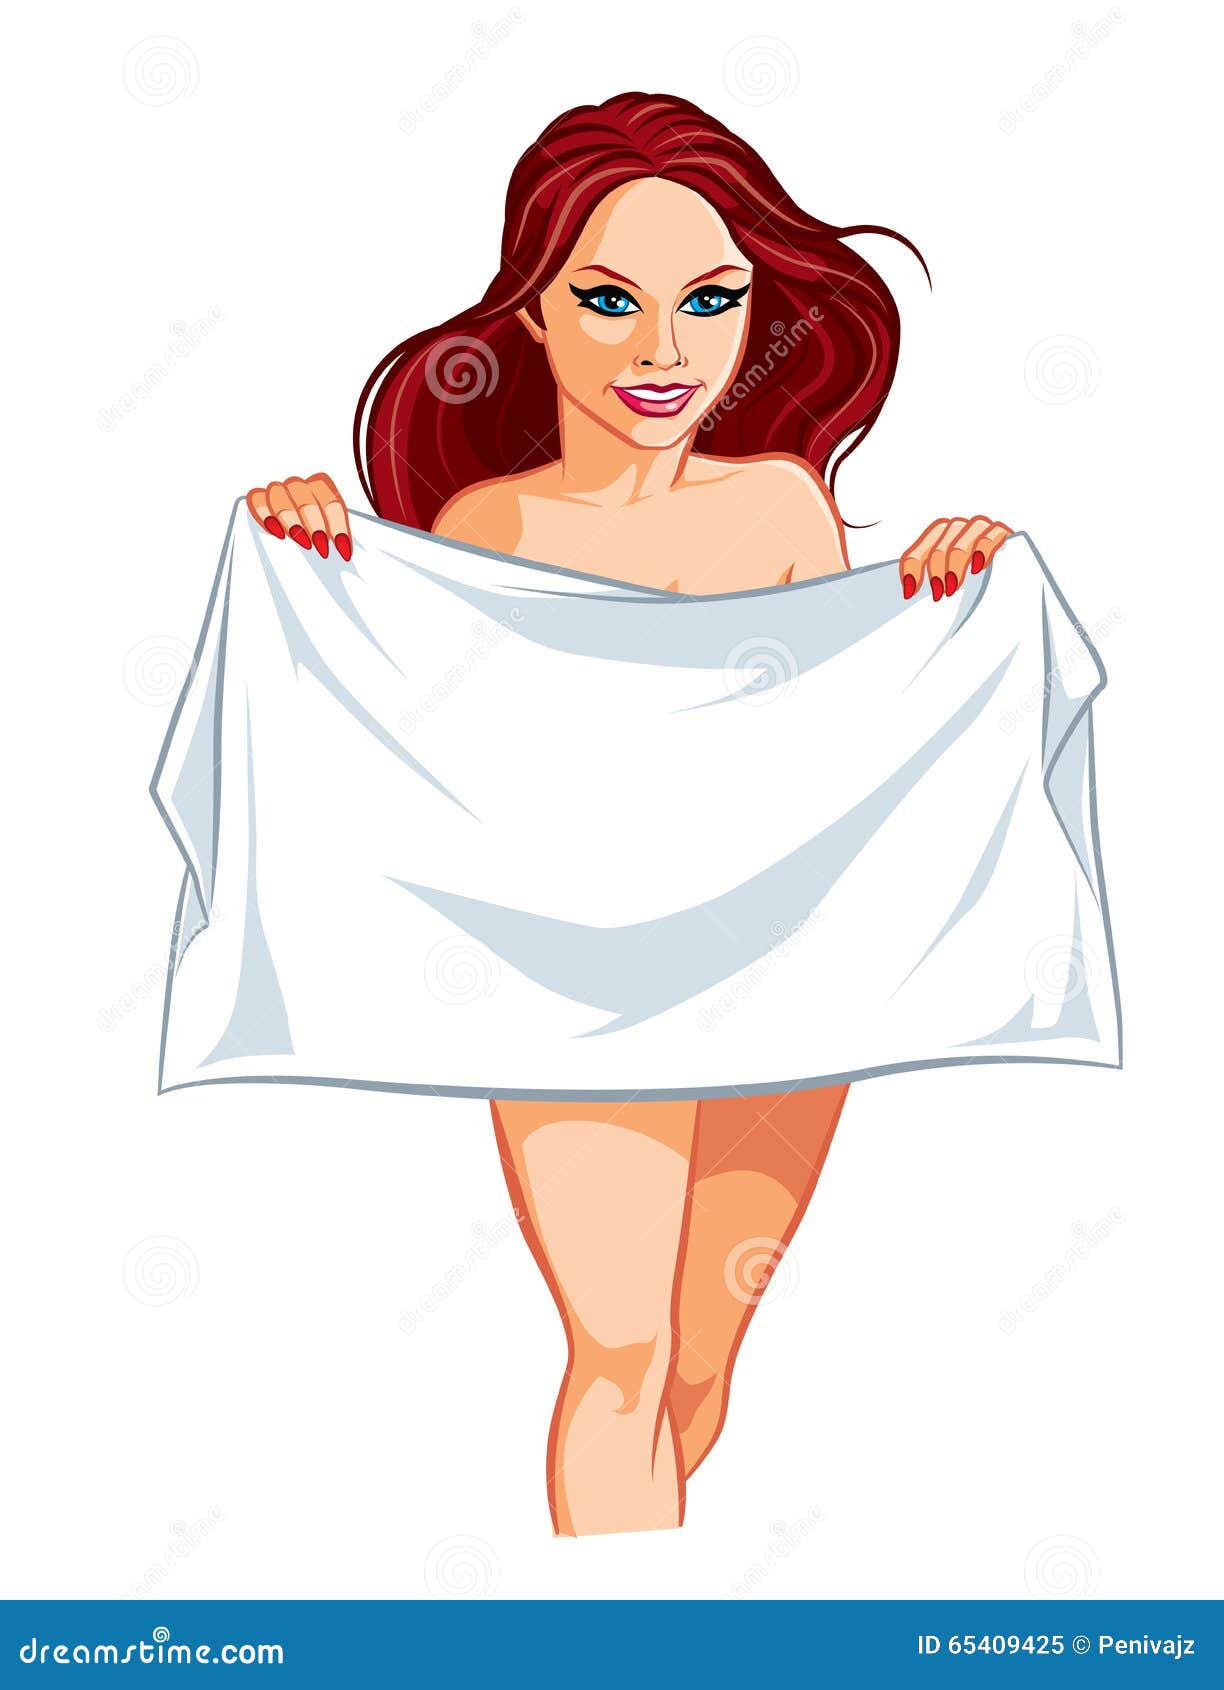 Прикрылась полотенцем. Девушка в полотенце. Зарисовка девушка в полотенце. Иллюстрация девушка в полотенце. Девушка в полотенце рис.